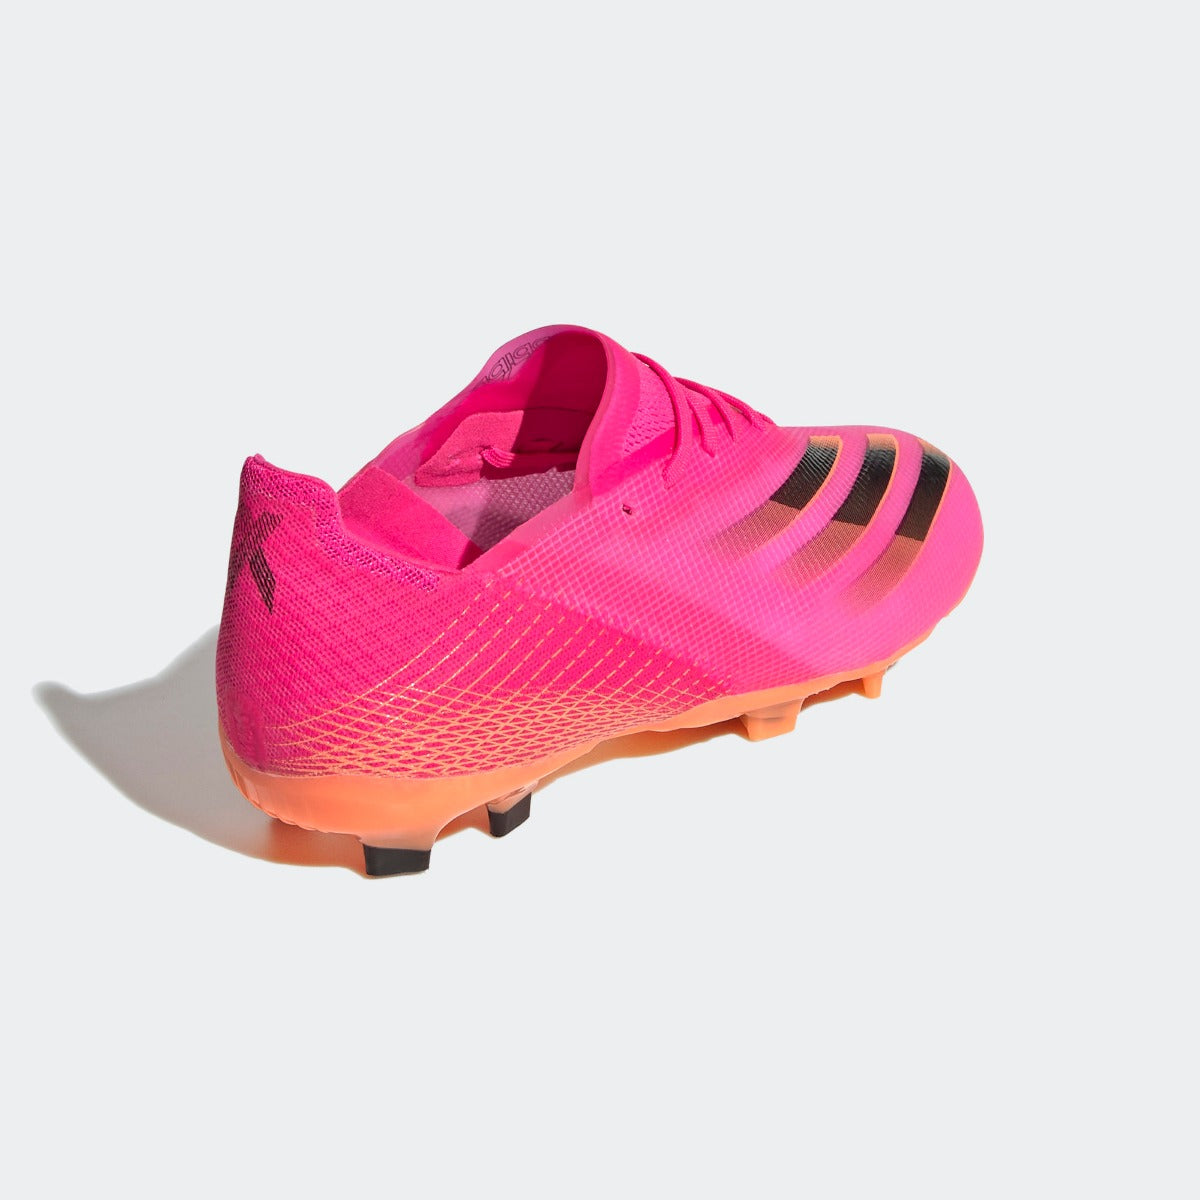 Adidas JR X Ghosted .1 FG - Pink-Black-Orange (Diagonal 2)